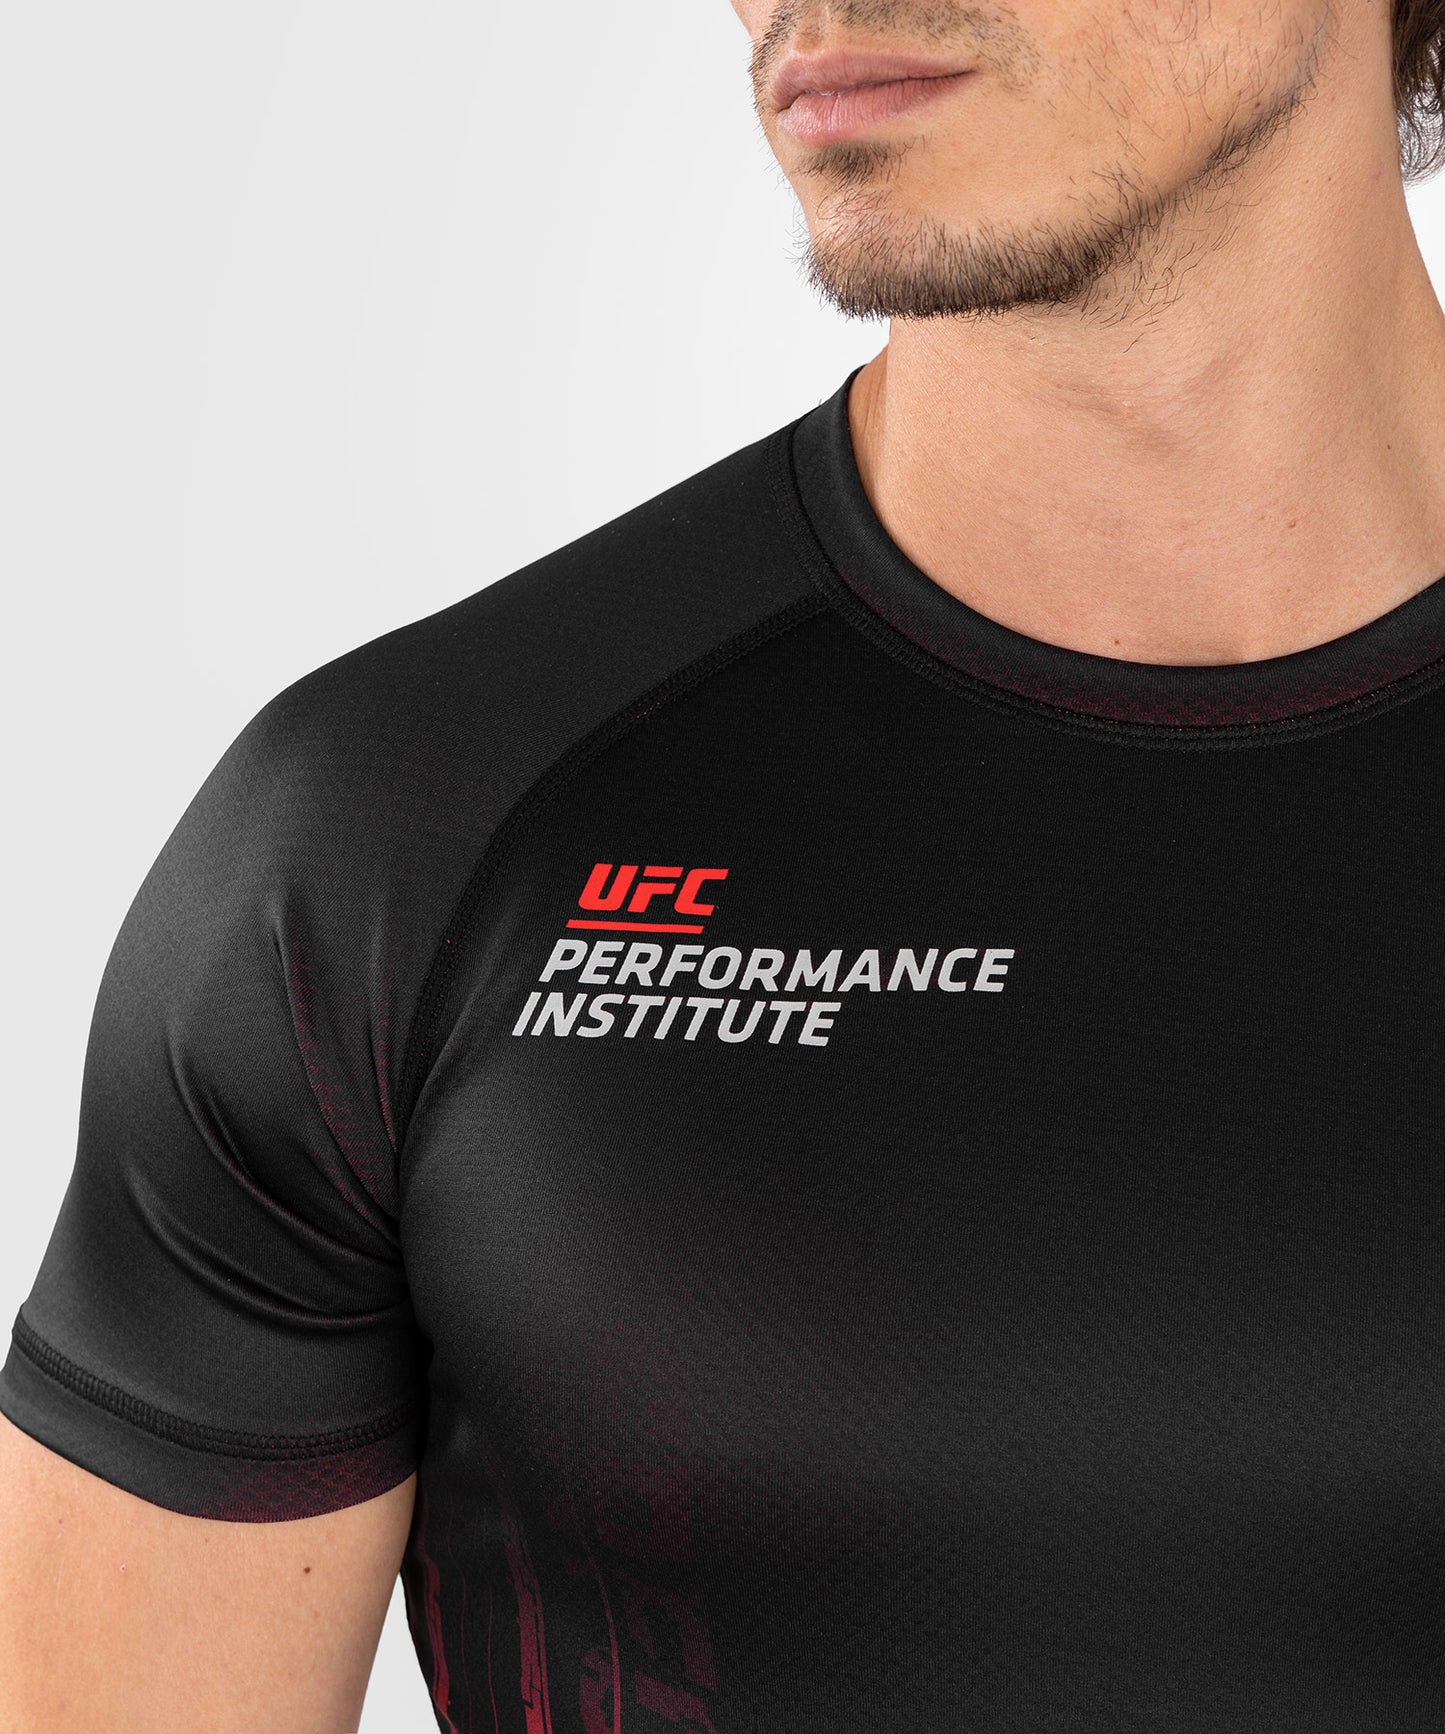 Rashguard à manches courtes pour hommes UFC Venum Performance Institute 2.0  - Noir/Rouge - T-shirts de compression